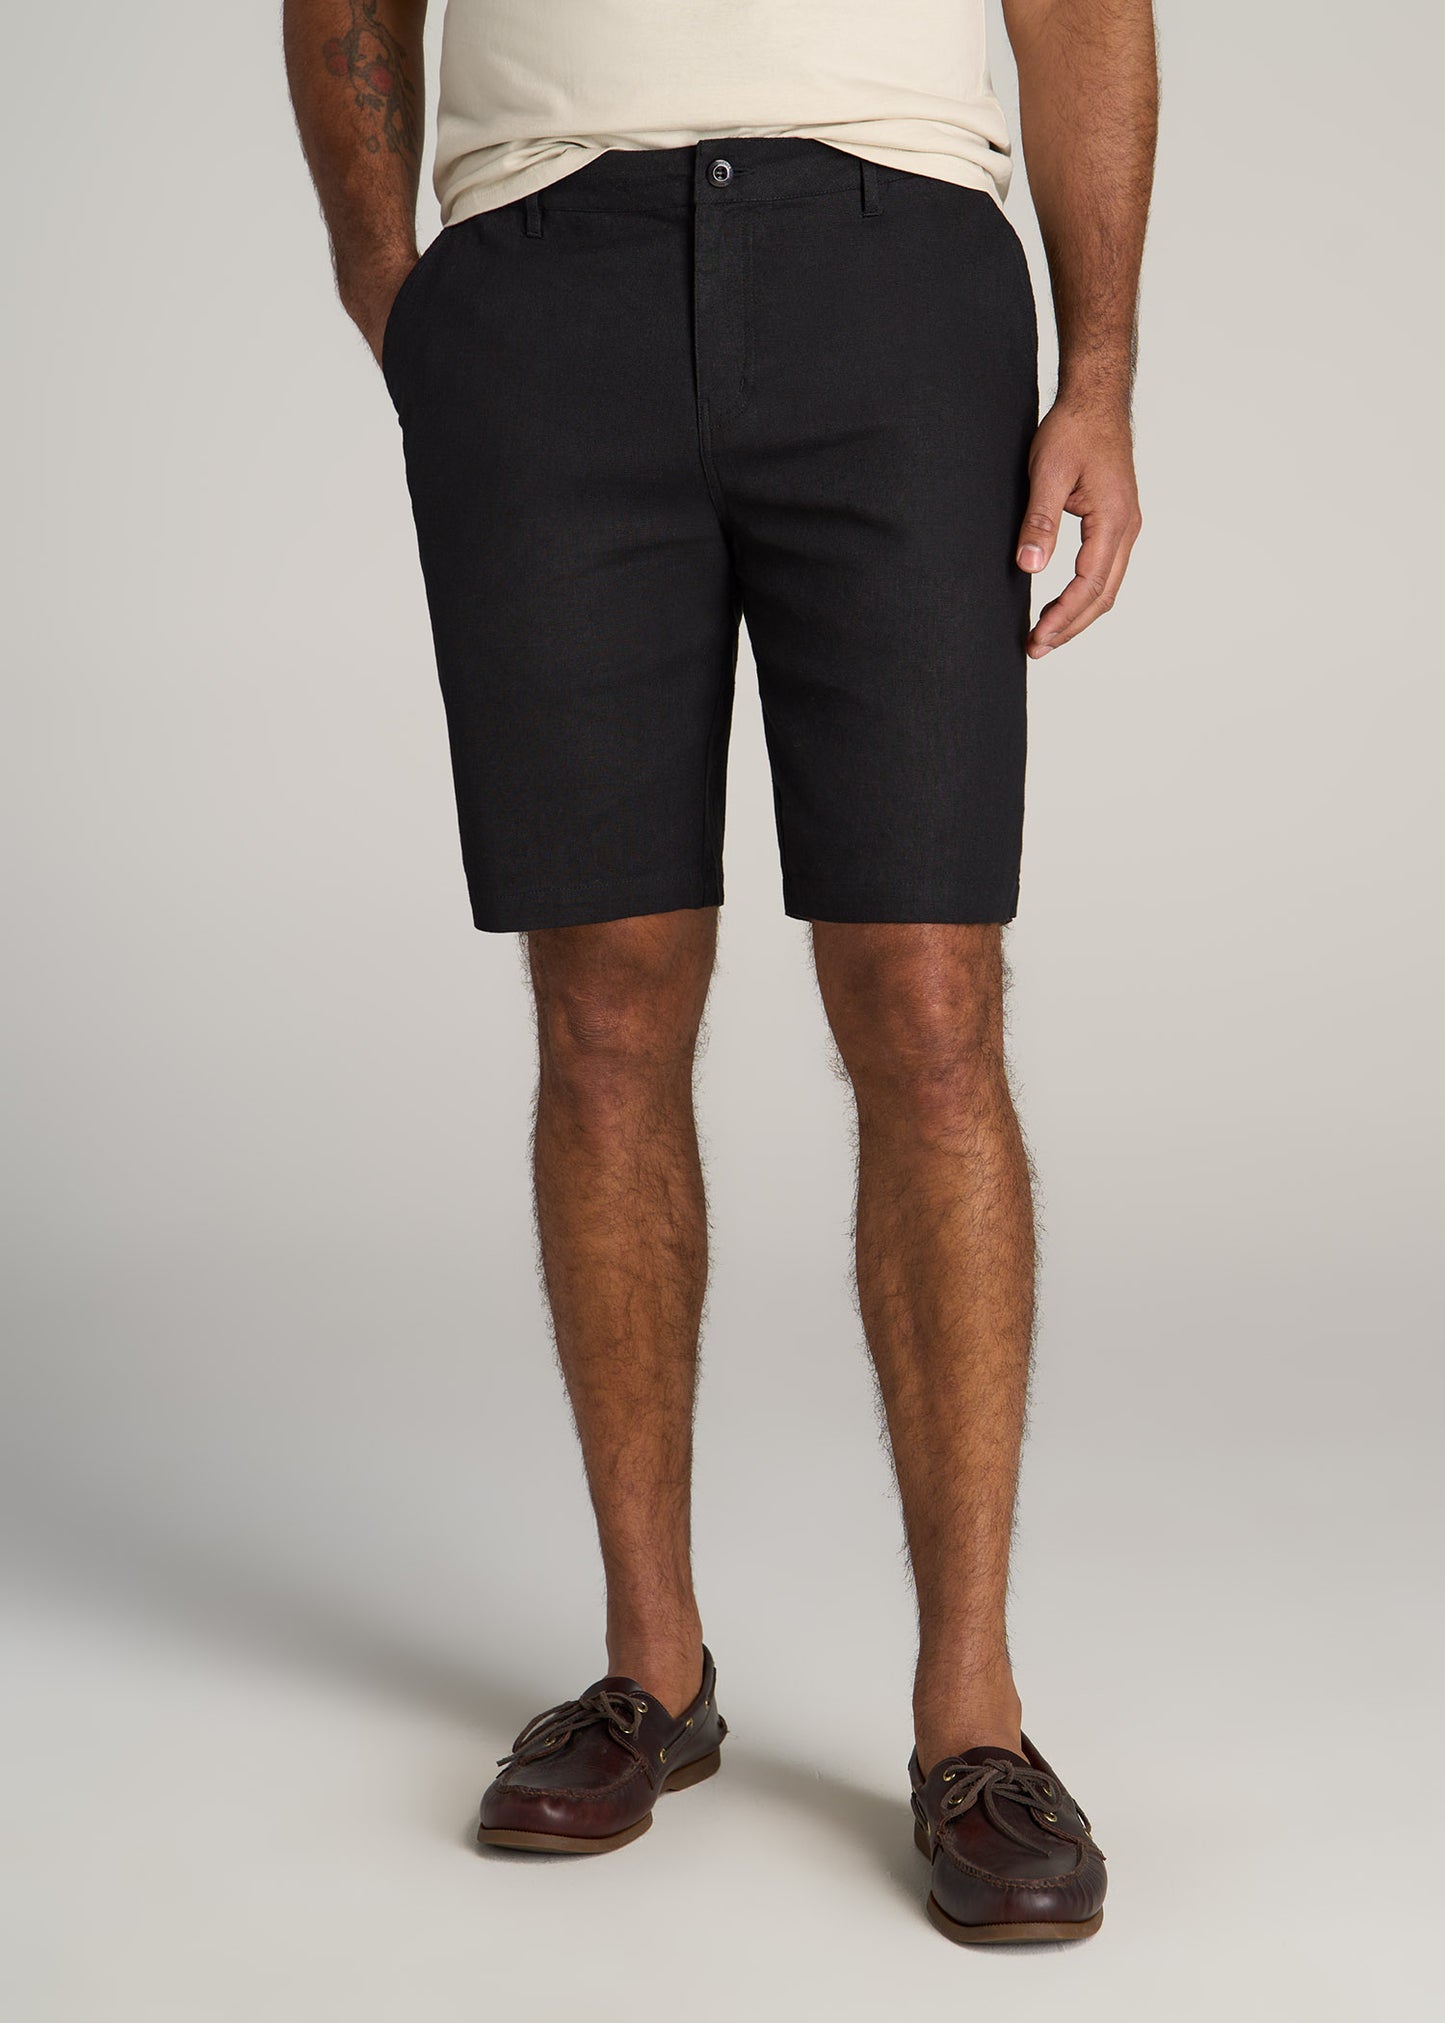 Mens Linen Shorts, Summer Shorts, Shorts for Men, Mens Organic